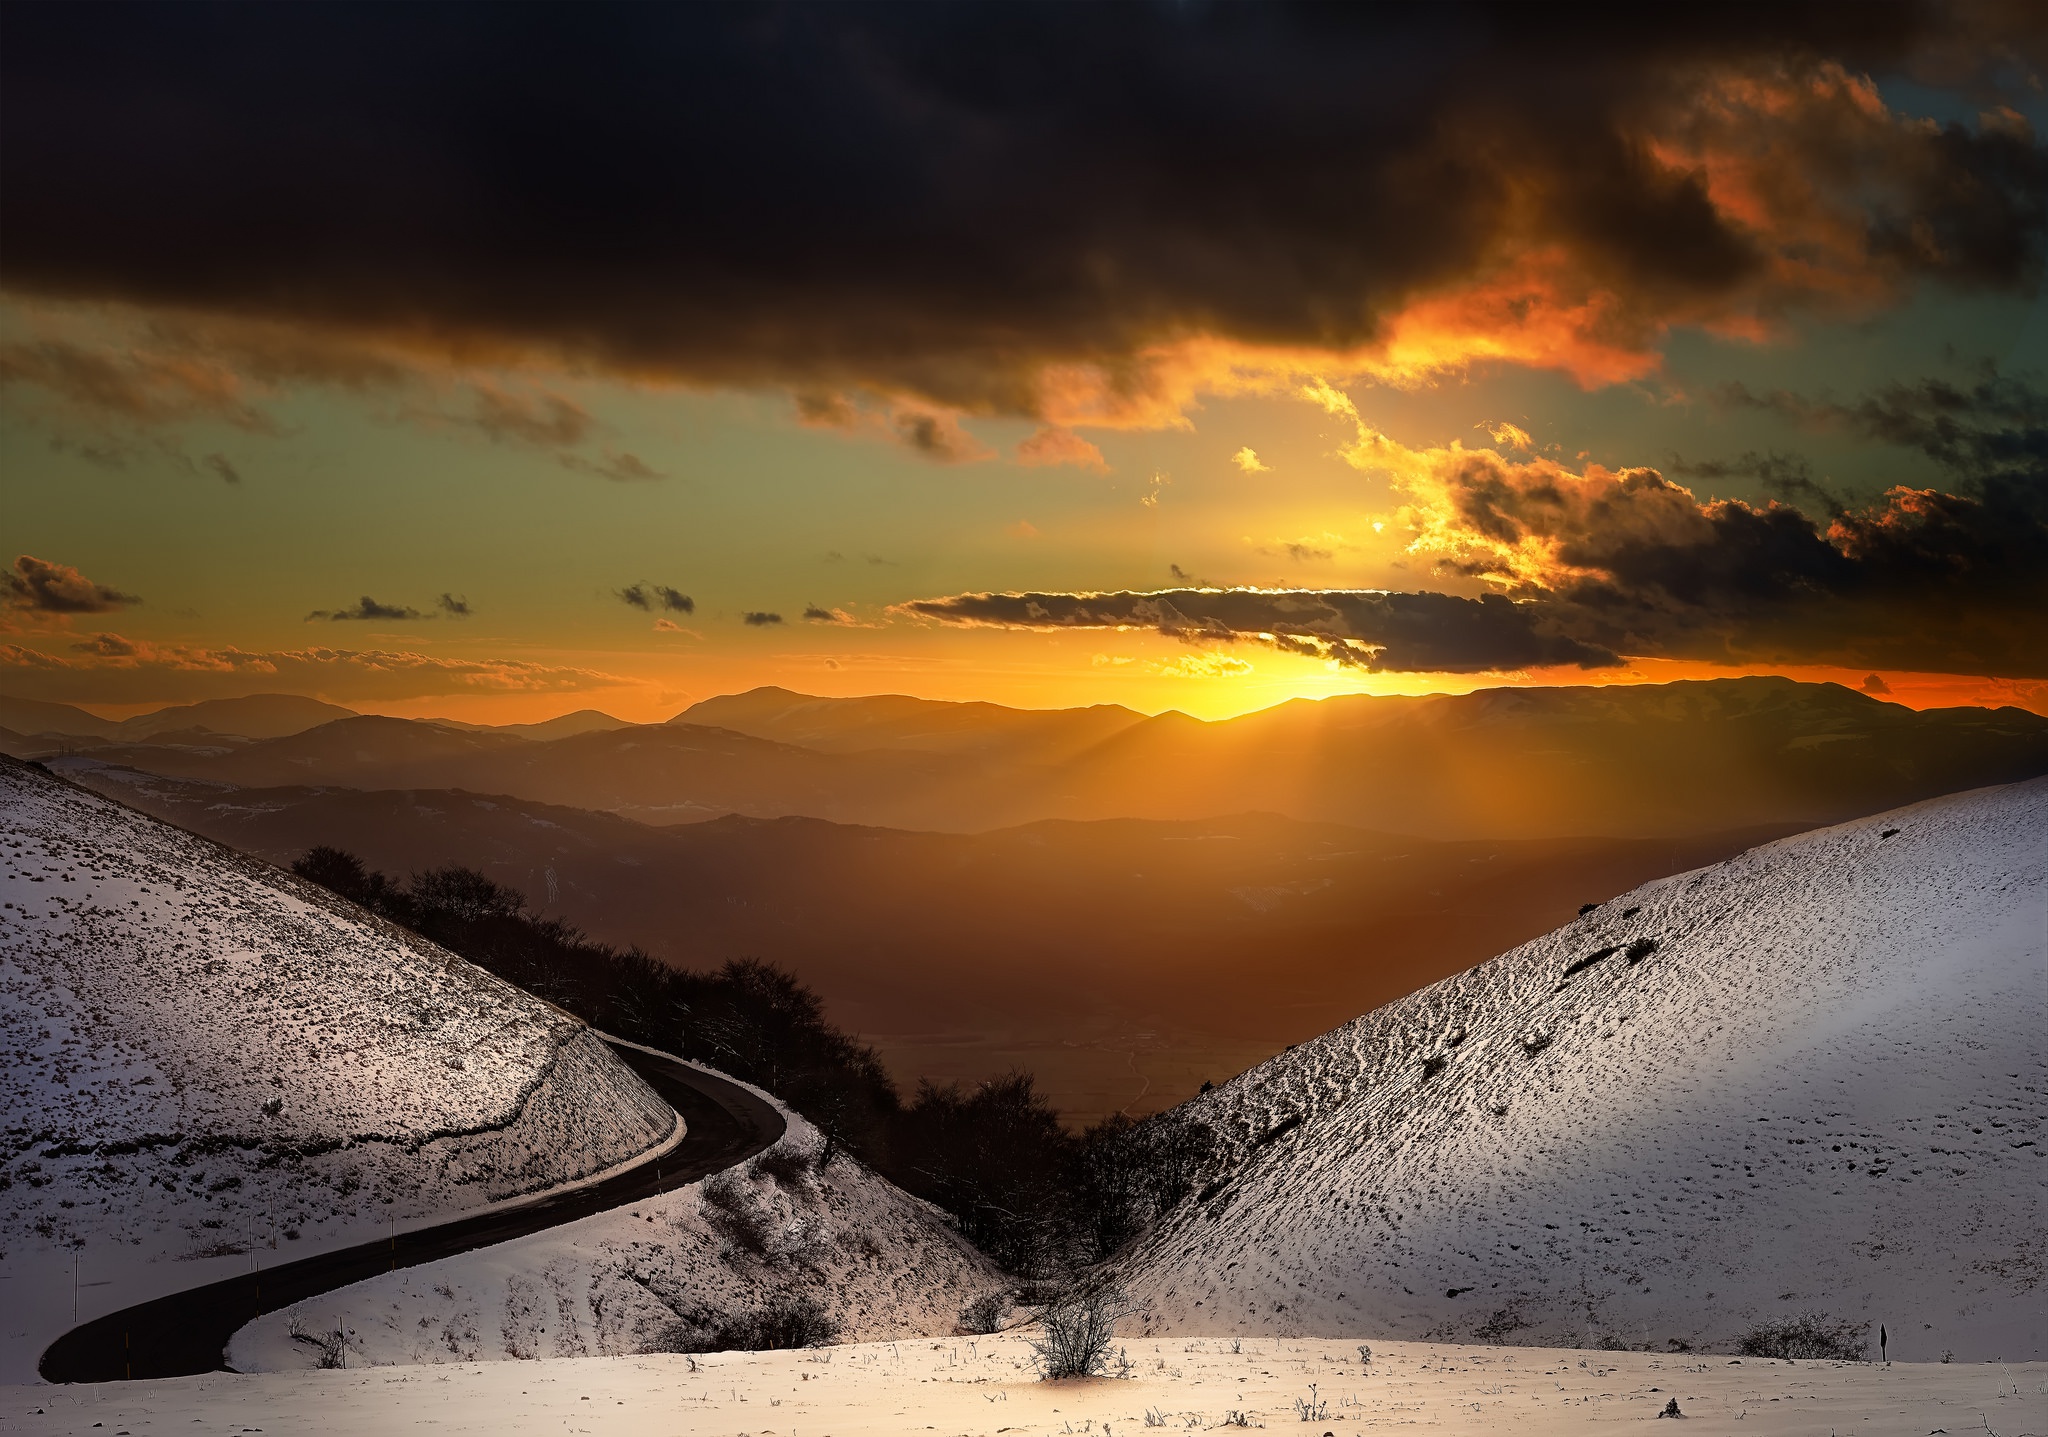 Скачать обои бесплатно Пейзаж, Зима, Гора, Фотографии, Солнечный Луч картинка на рабочий стол ПК